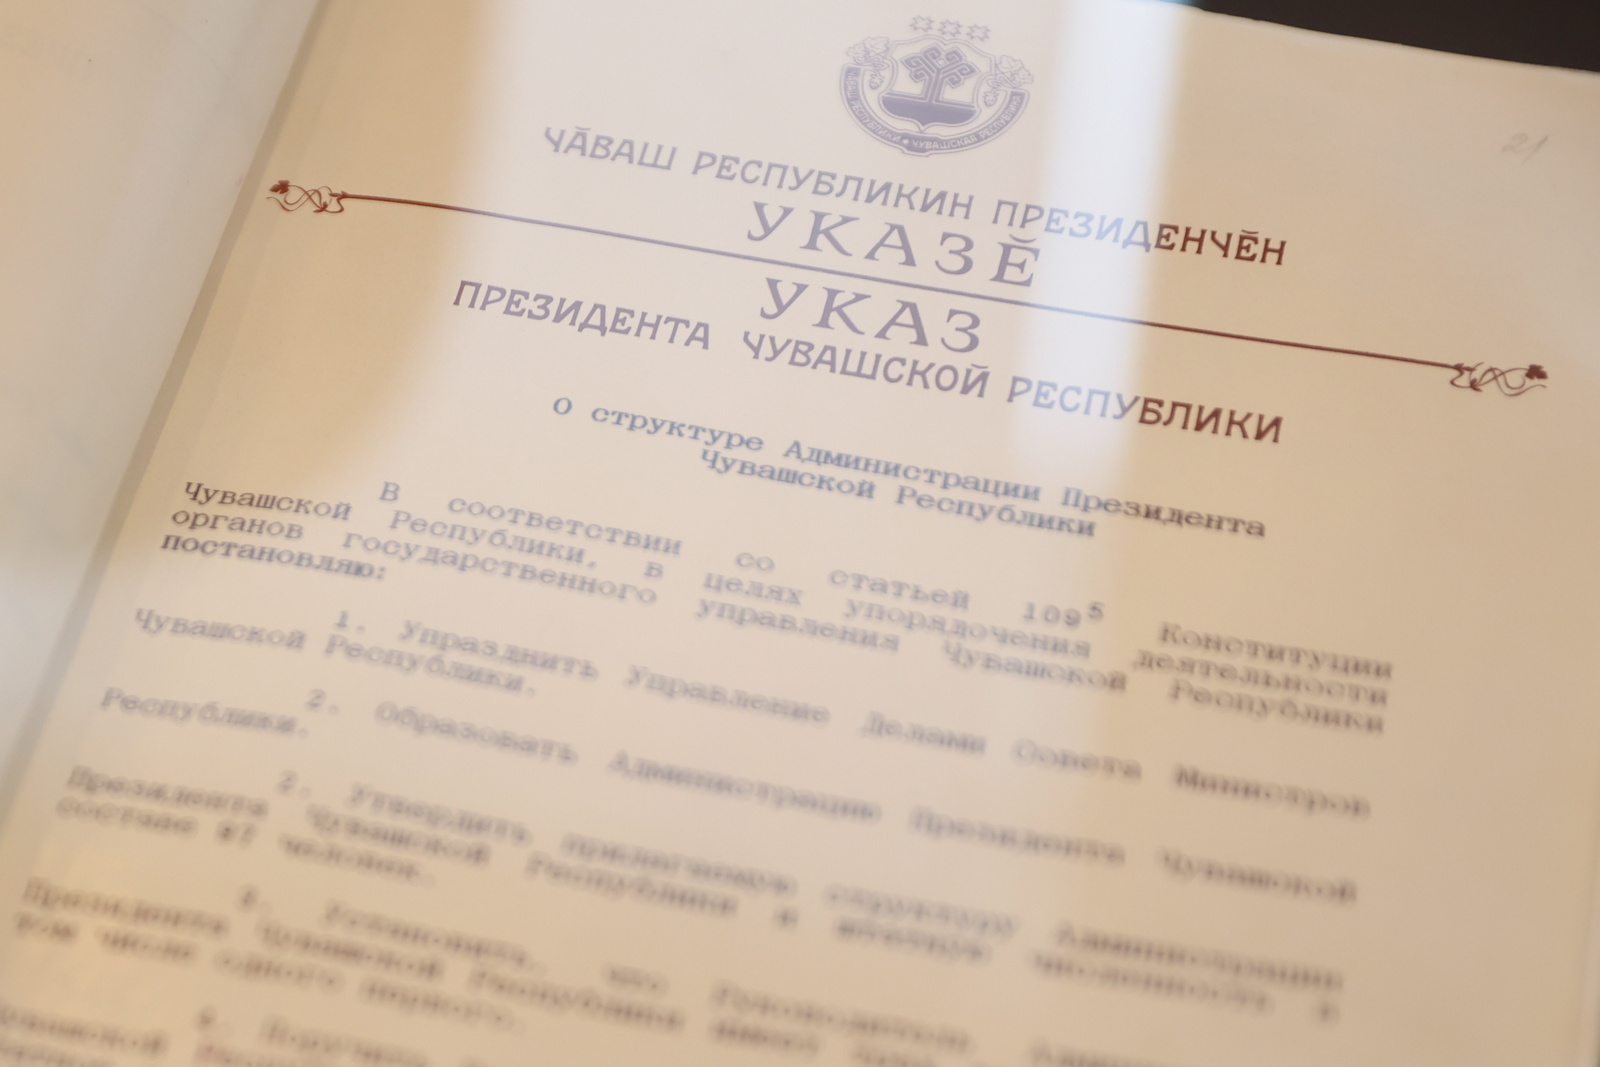 Администрация Главы Чувашской Республики отметила 30-летие